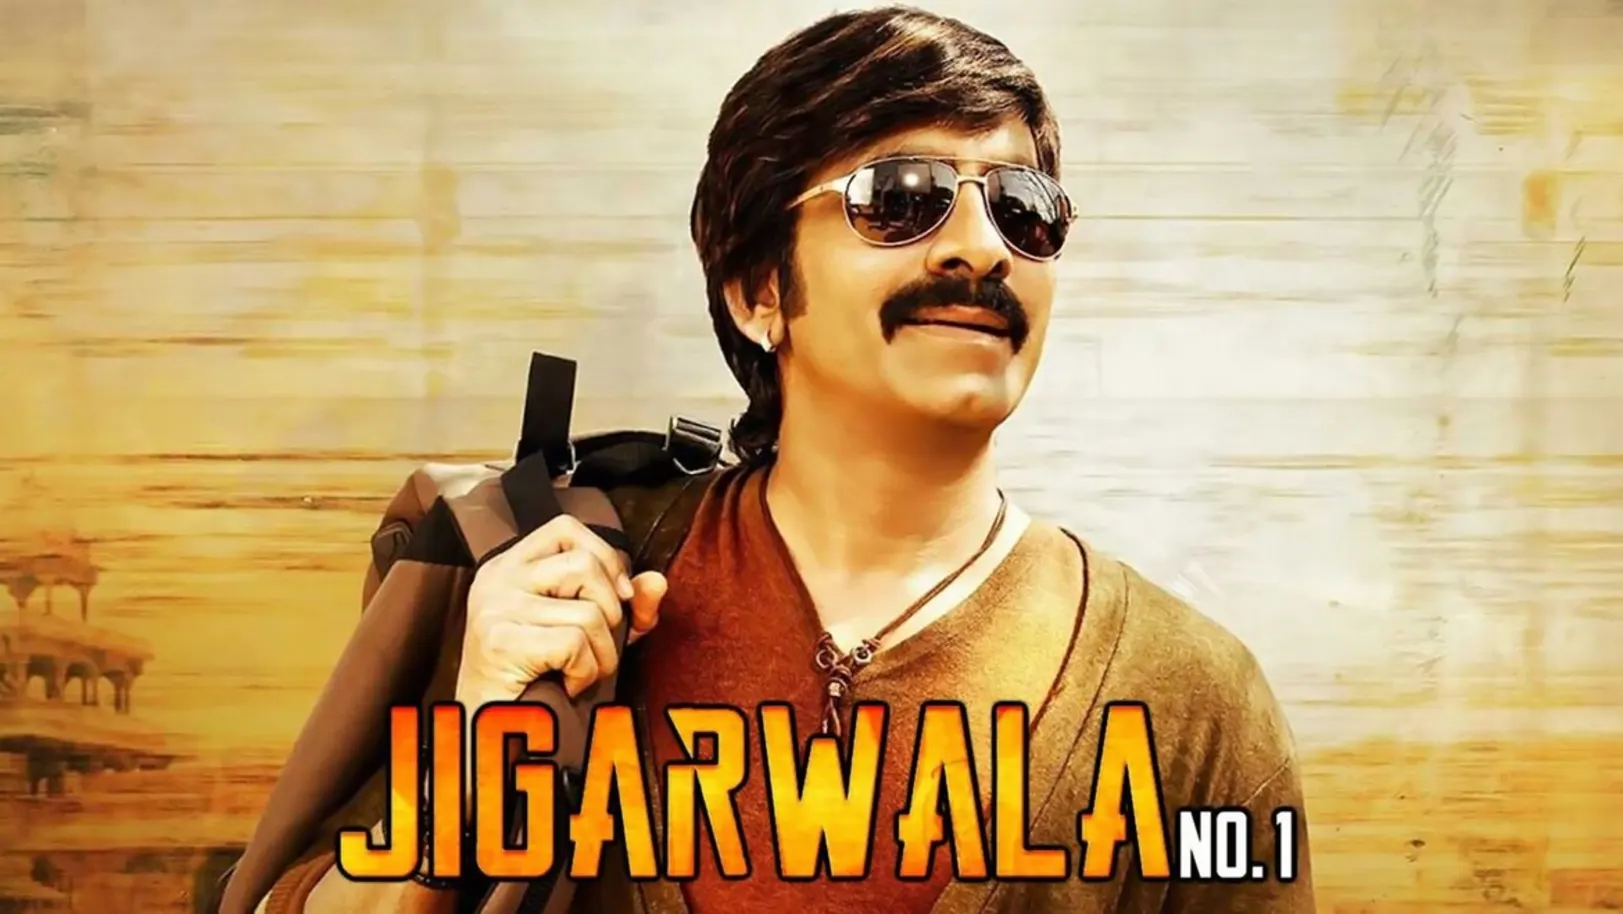 Jigarwala No.1 Streaming Now On Zee Cinema HD